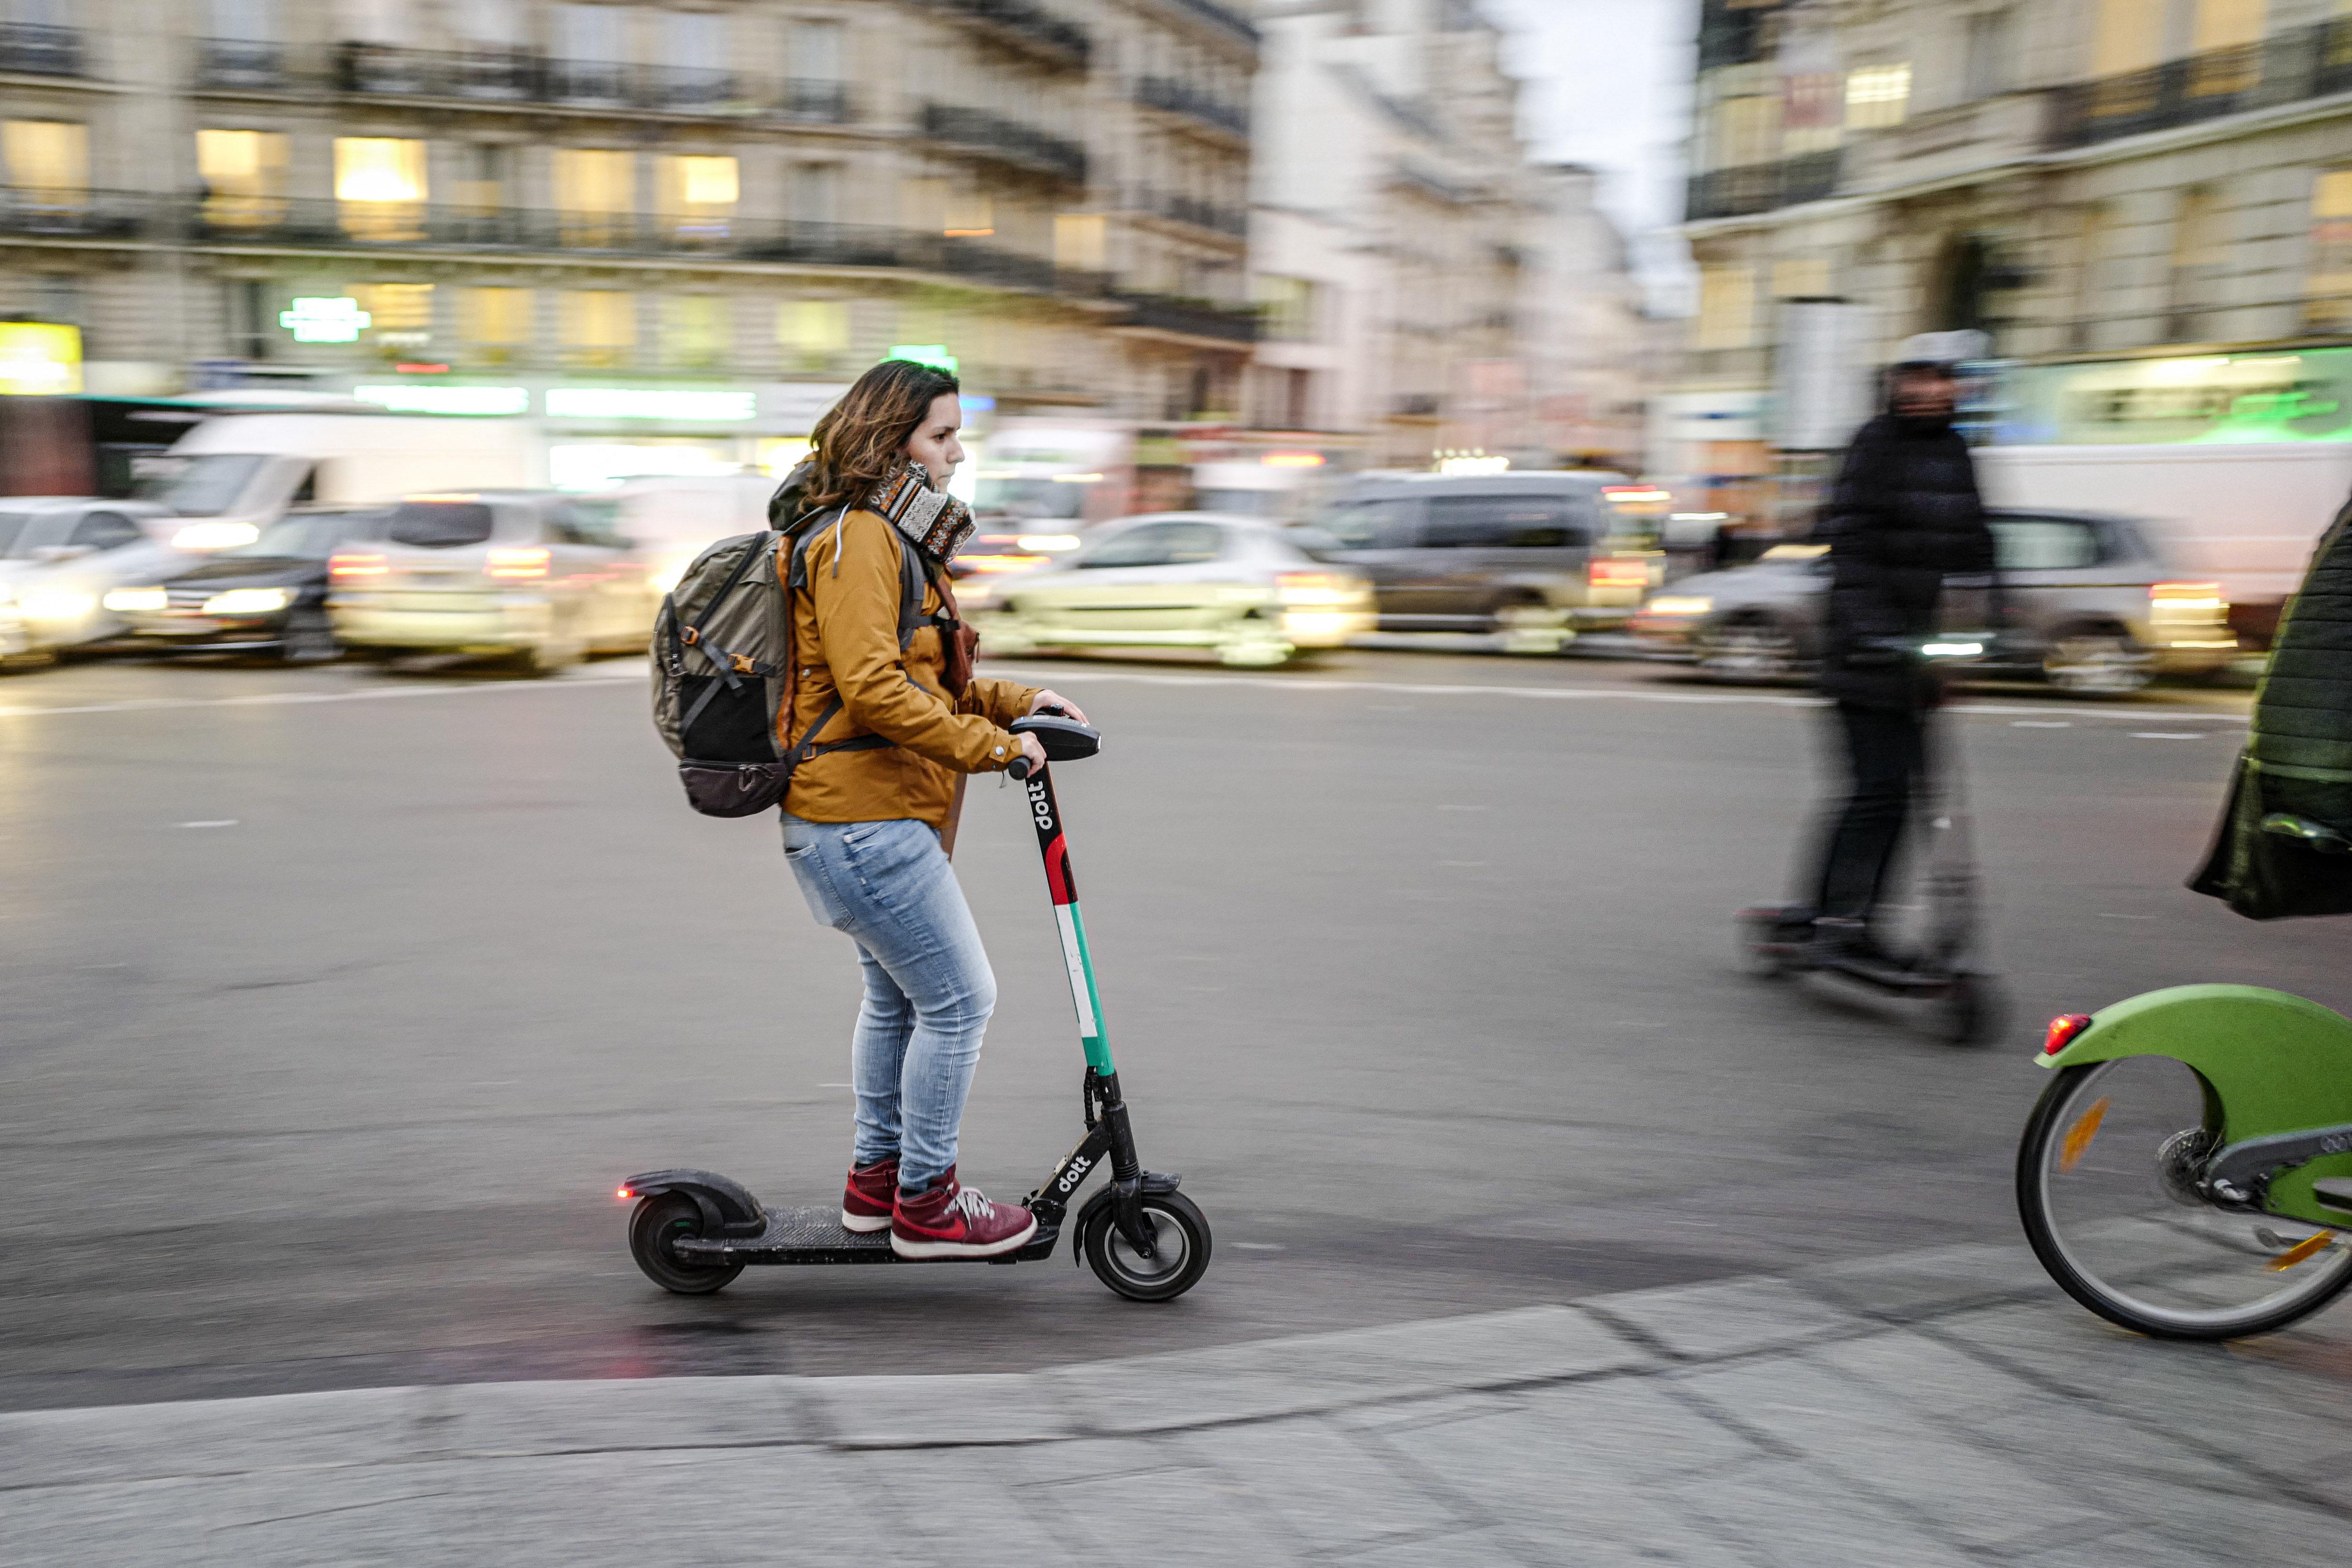 Parijs beperkt snelheid van e-scooters tot 10 km/u in bepaalde zones